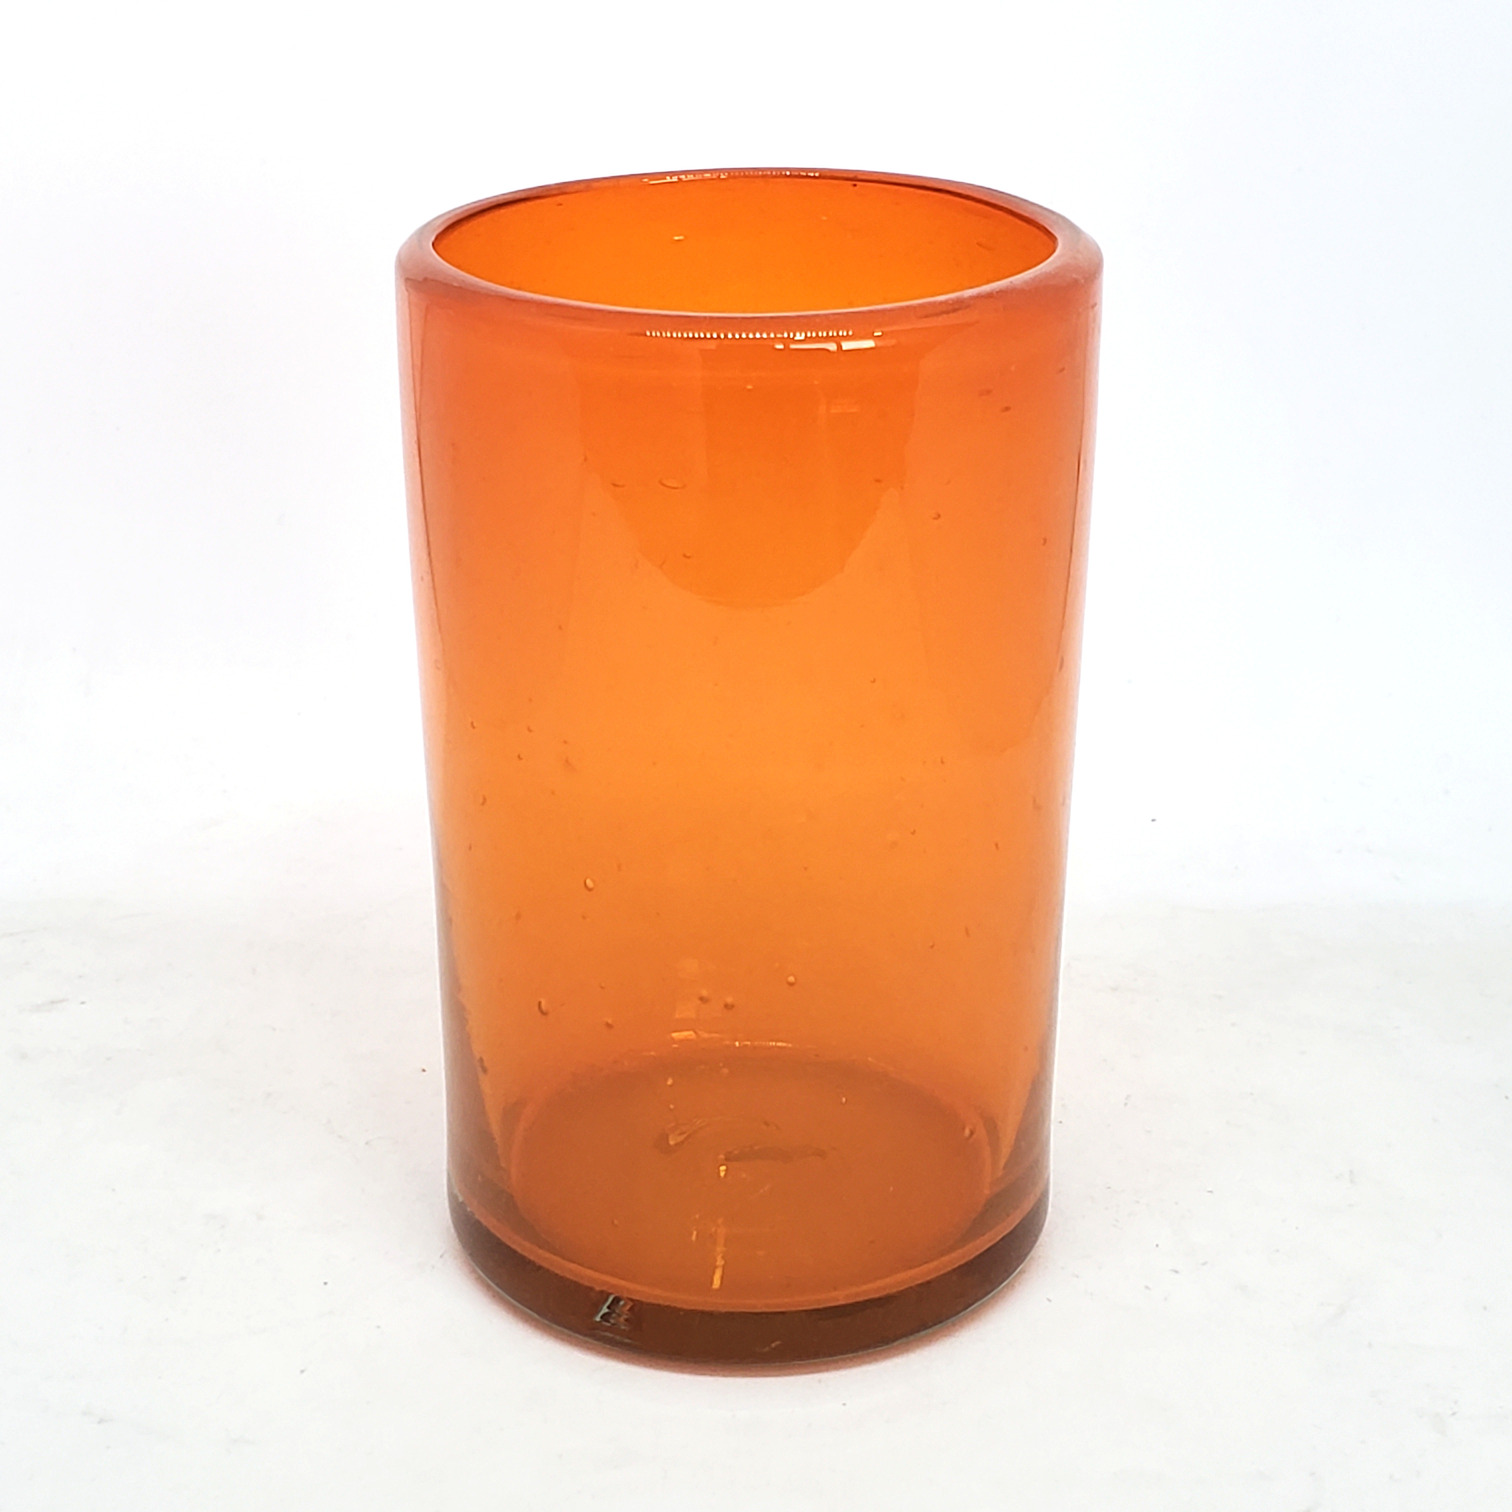 Novedades / Juego de 6 vasos grandes color naranja / �stos artesanales vasos le dar�n un toque cl�sico a su bebida favorita.